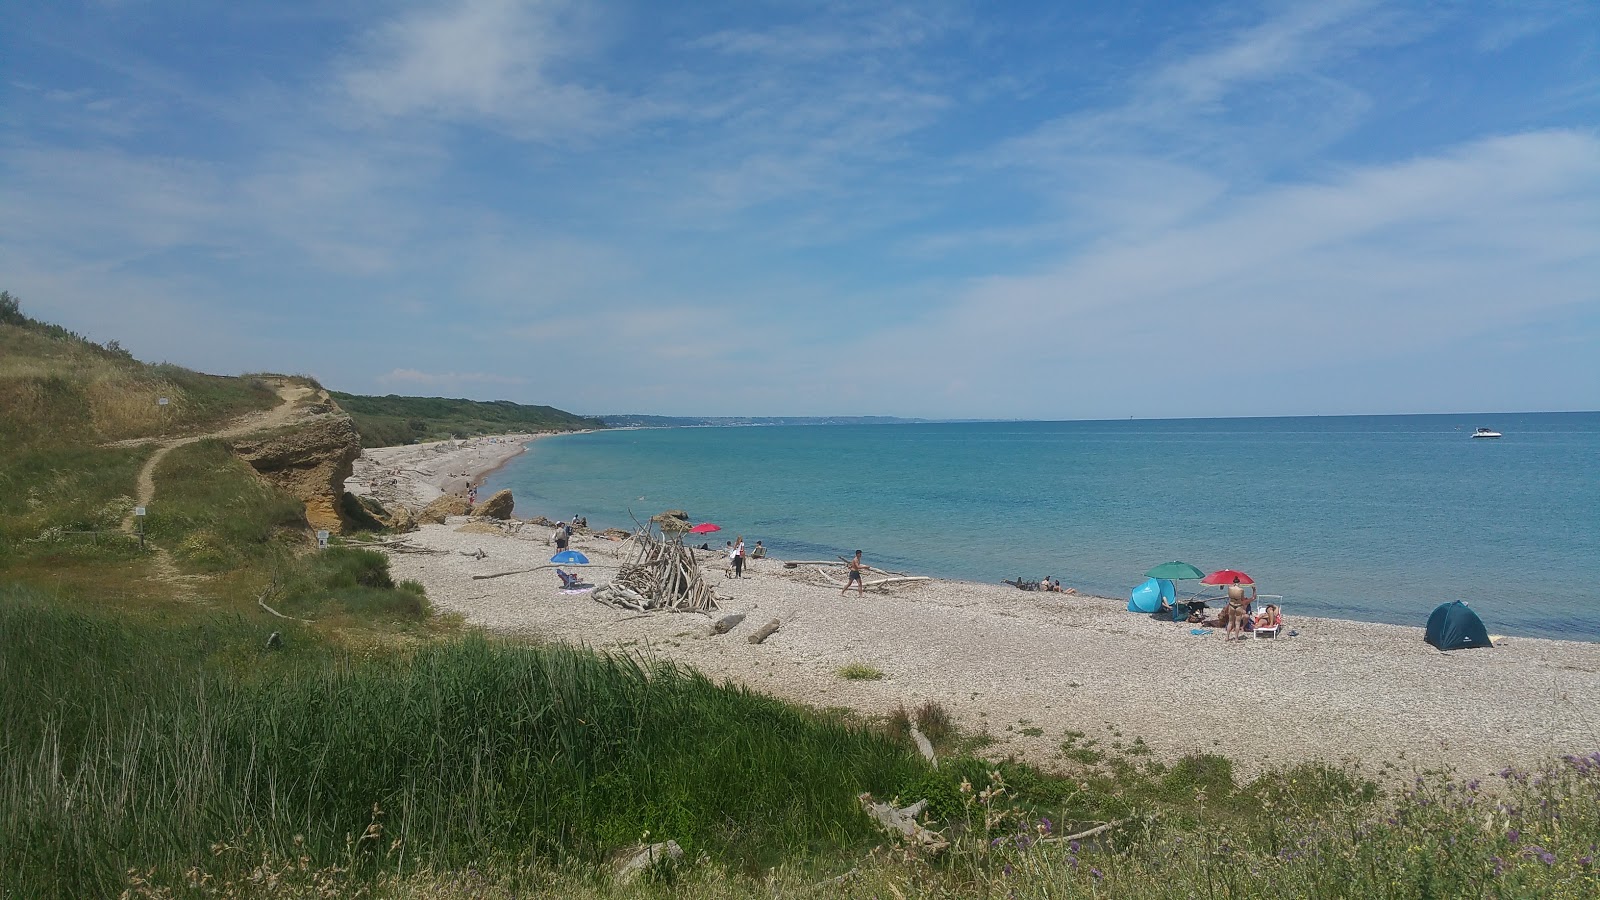 Photo of Spiaggia di Punta Aderci located in natural area